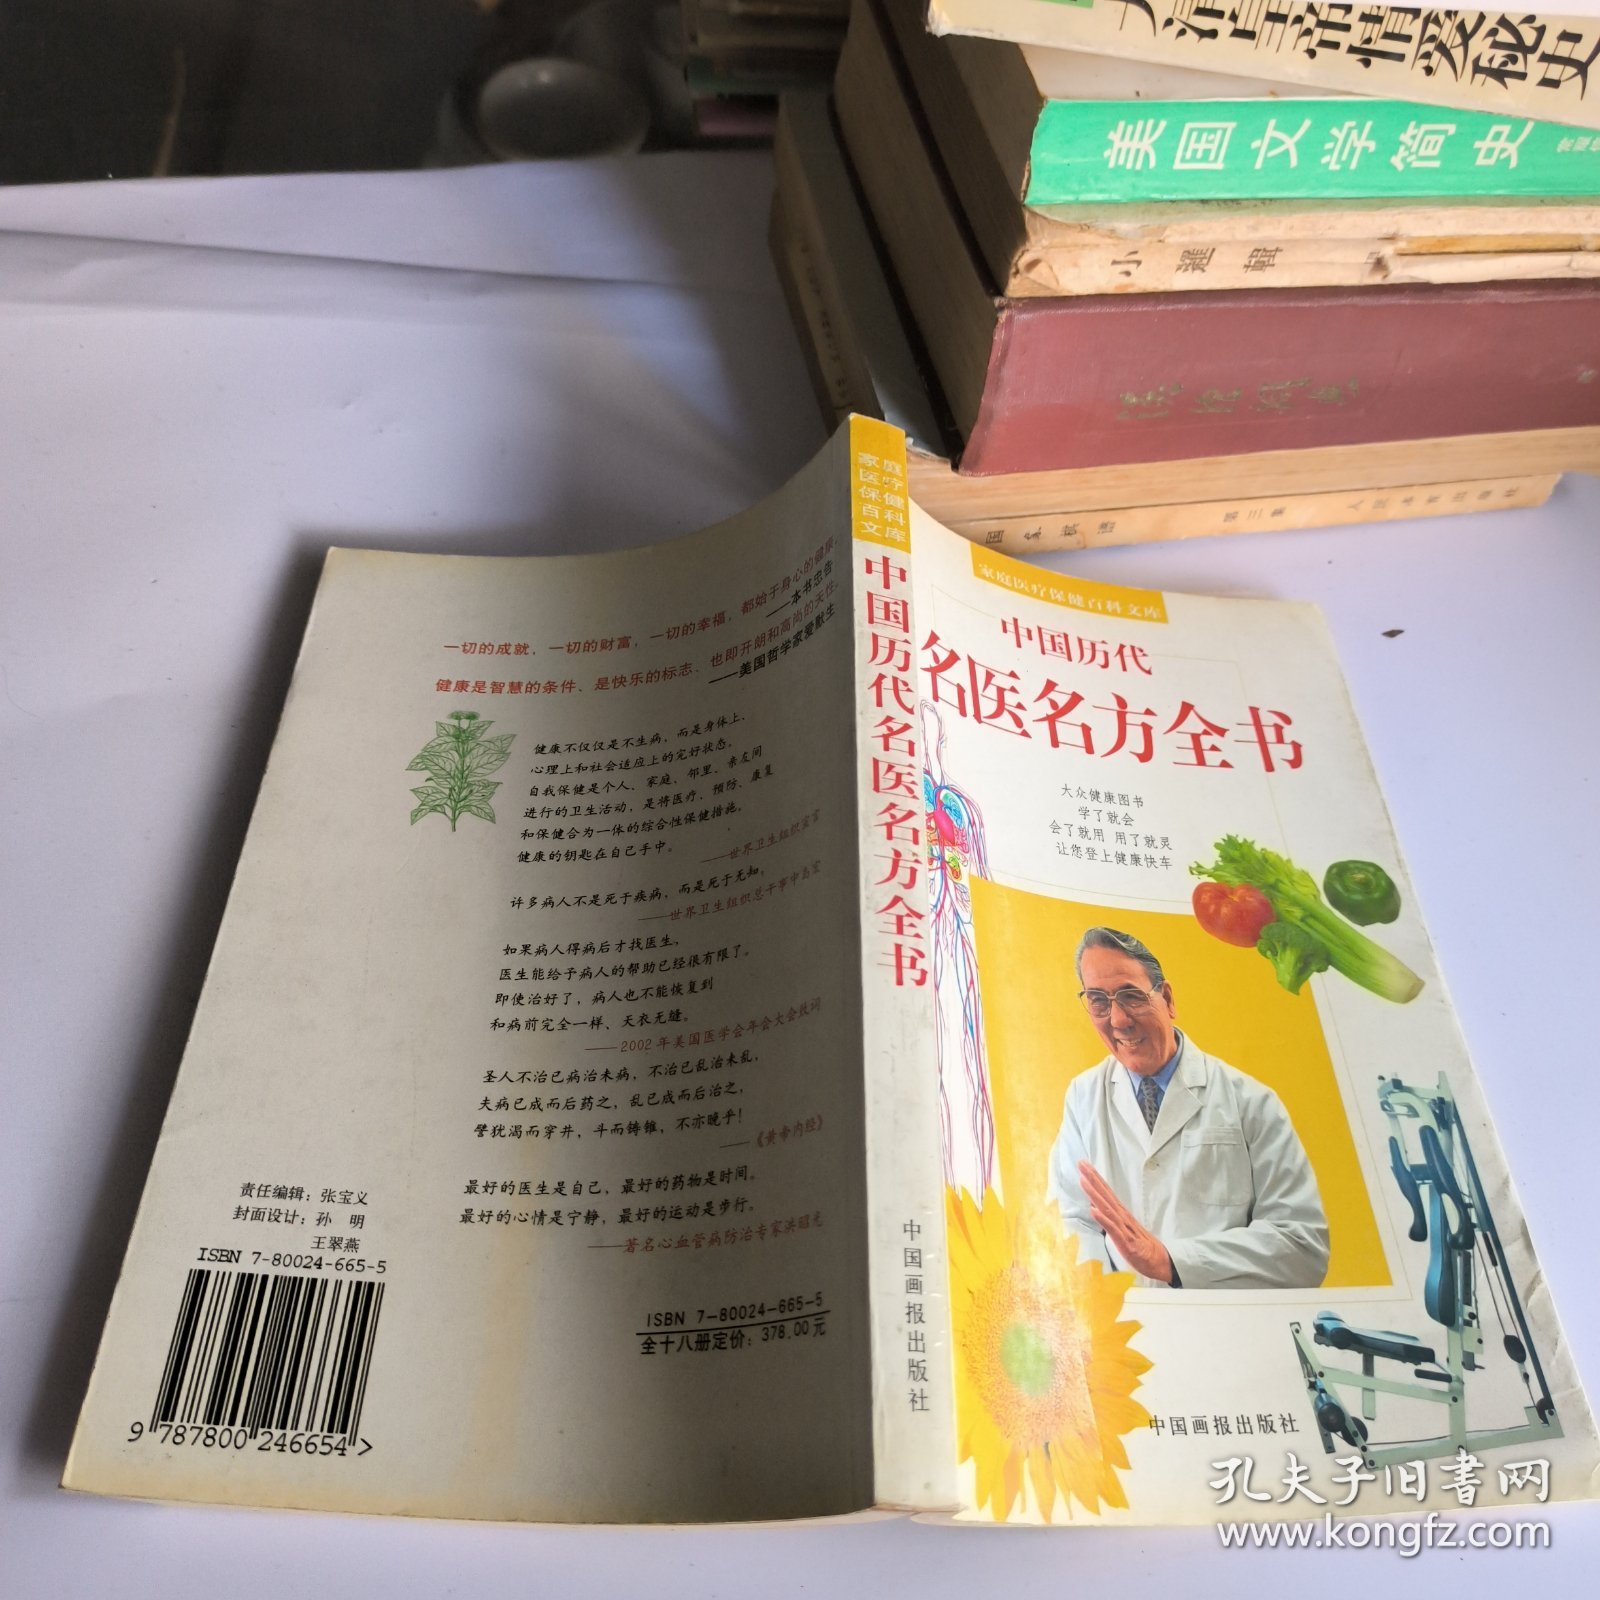 中国历代名医名方全书